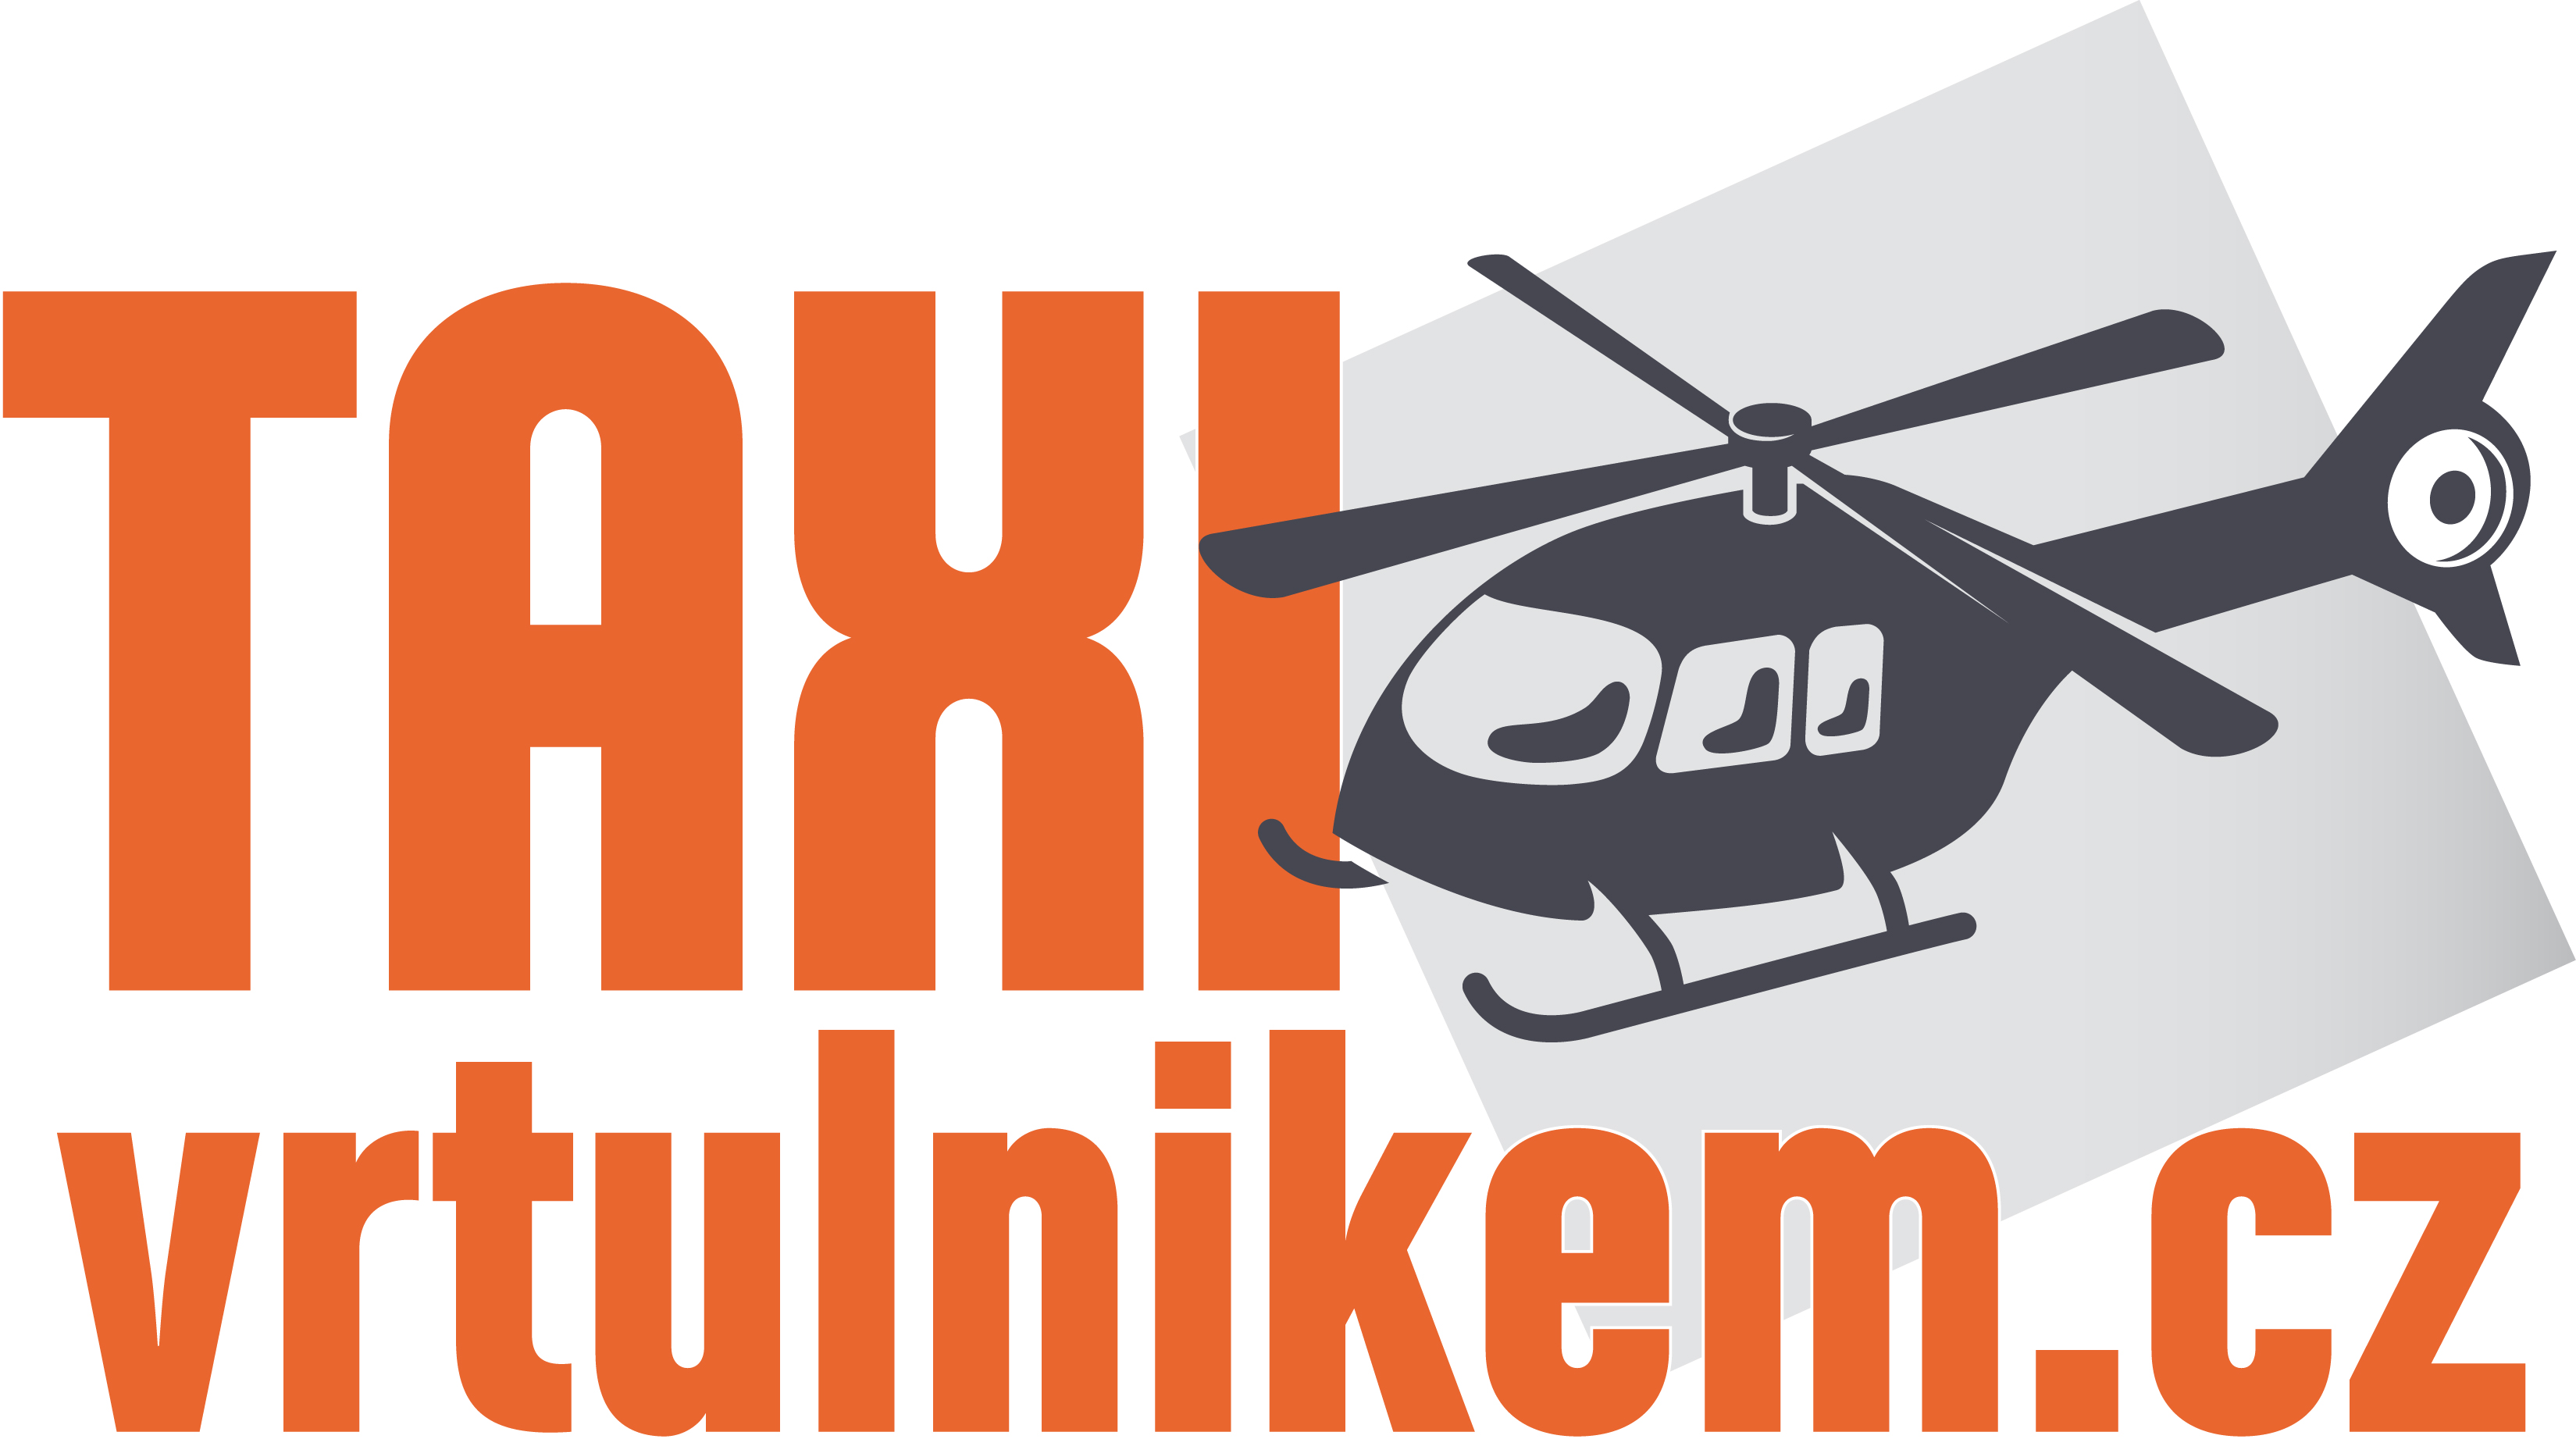 TAXI vrtulnikem logo